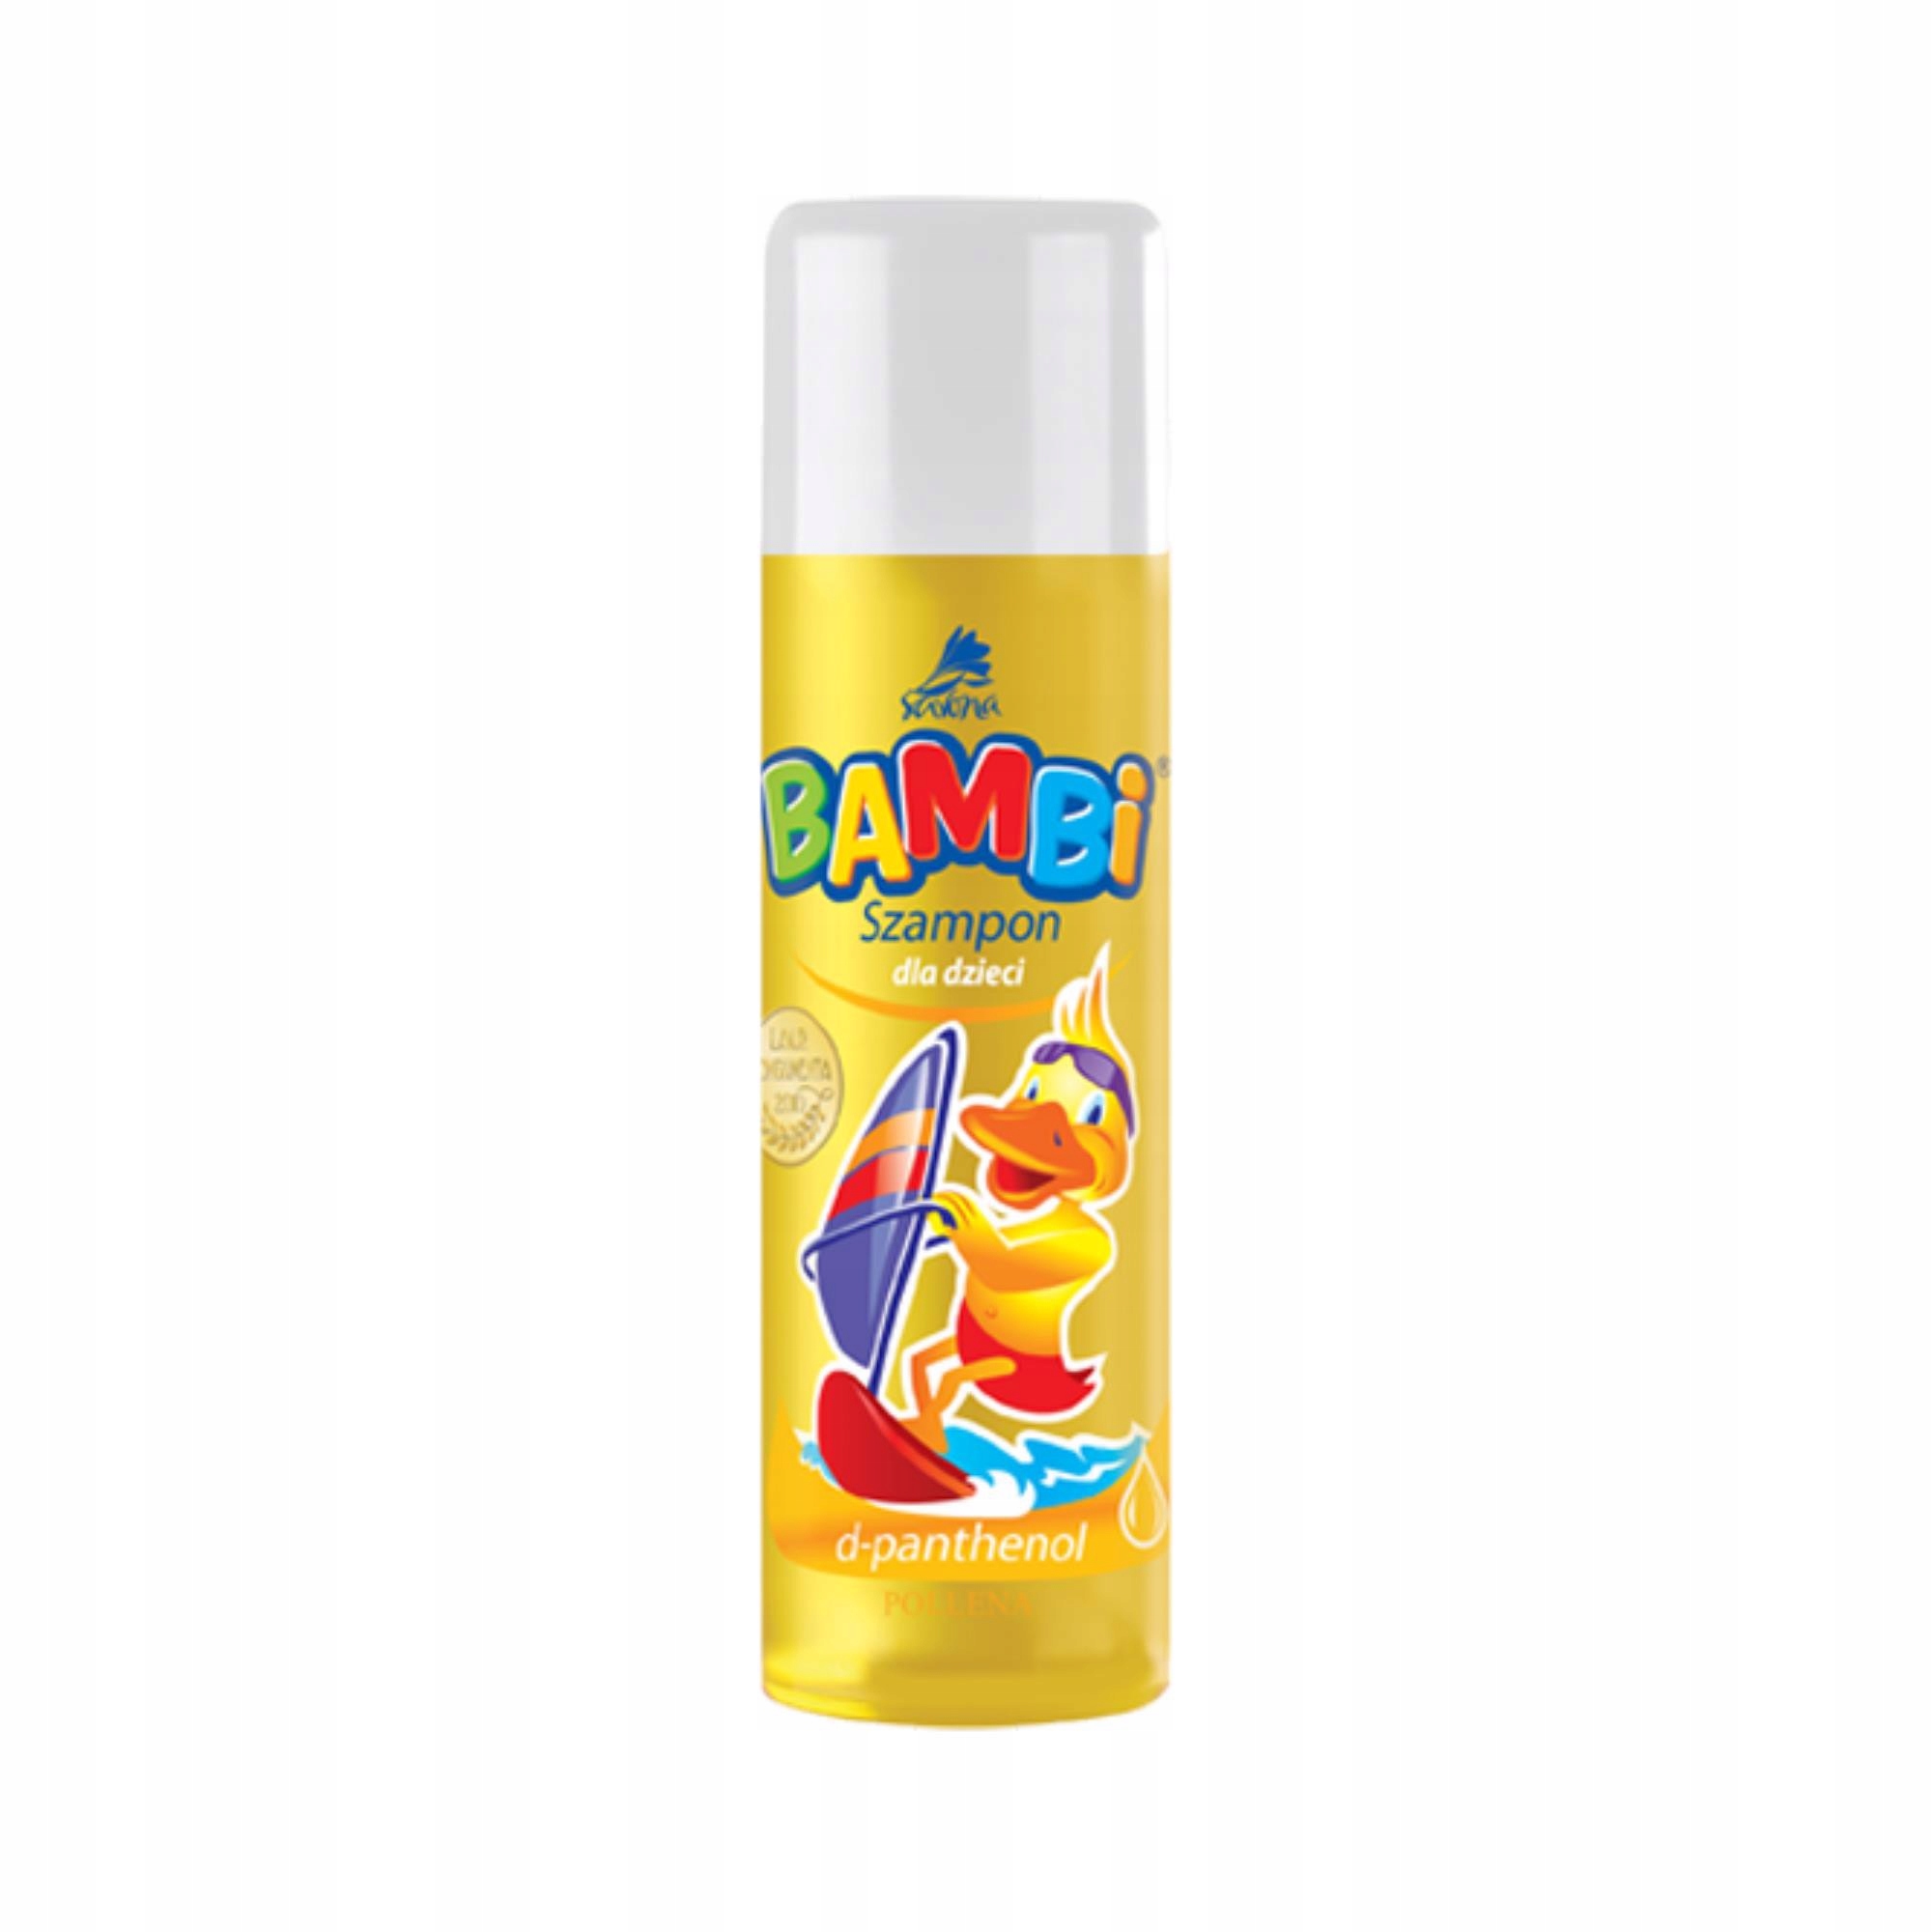 żółty szampon dla dzieci